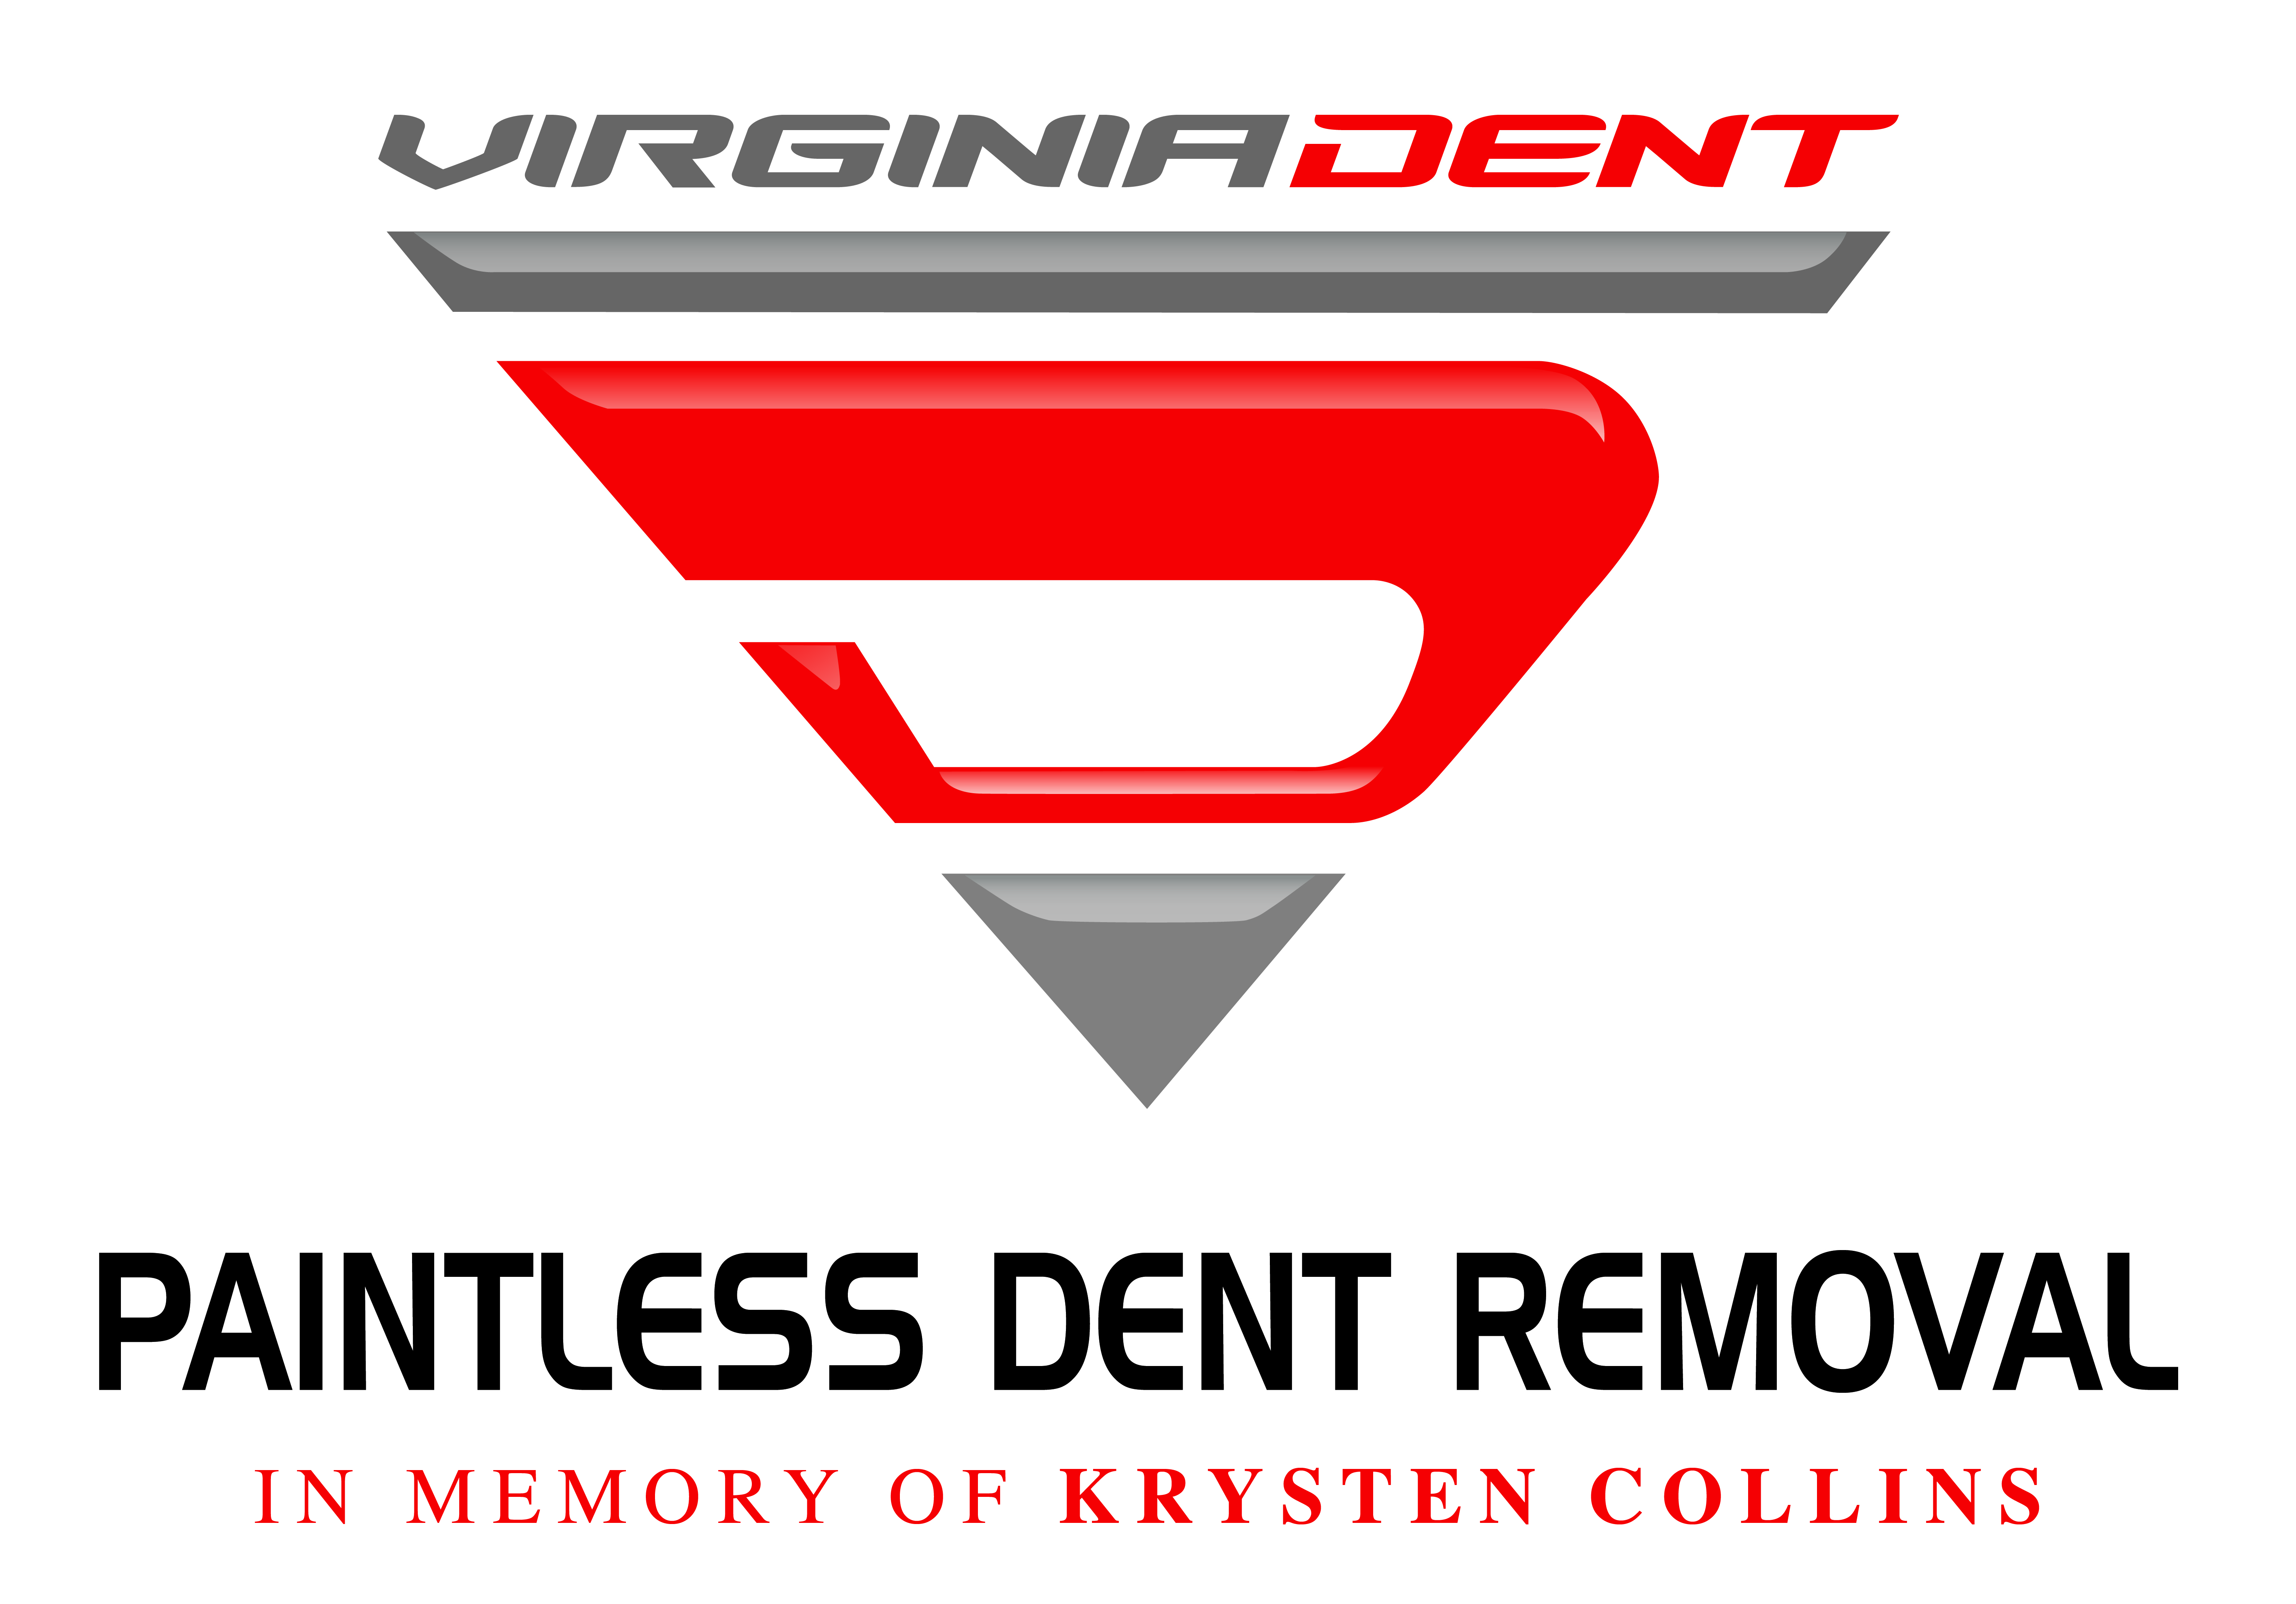 Virginia Dent, Inc